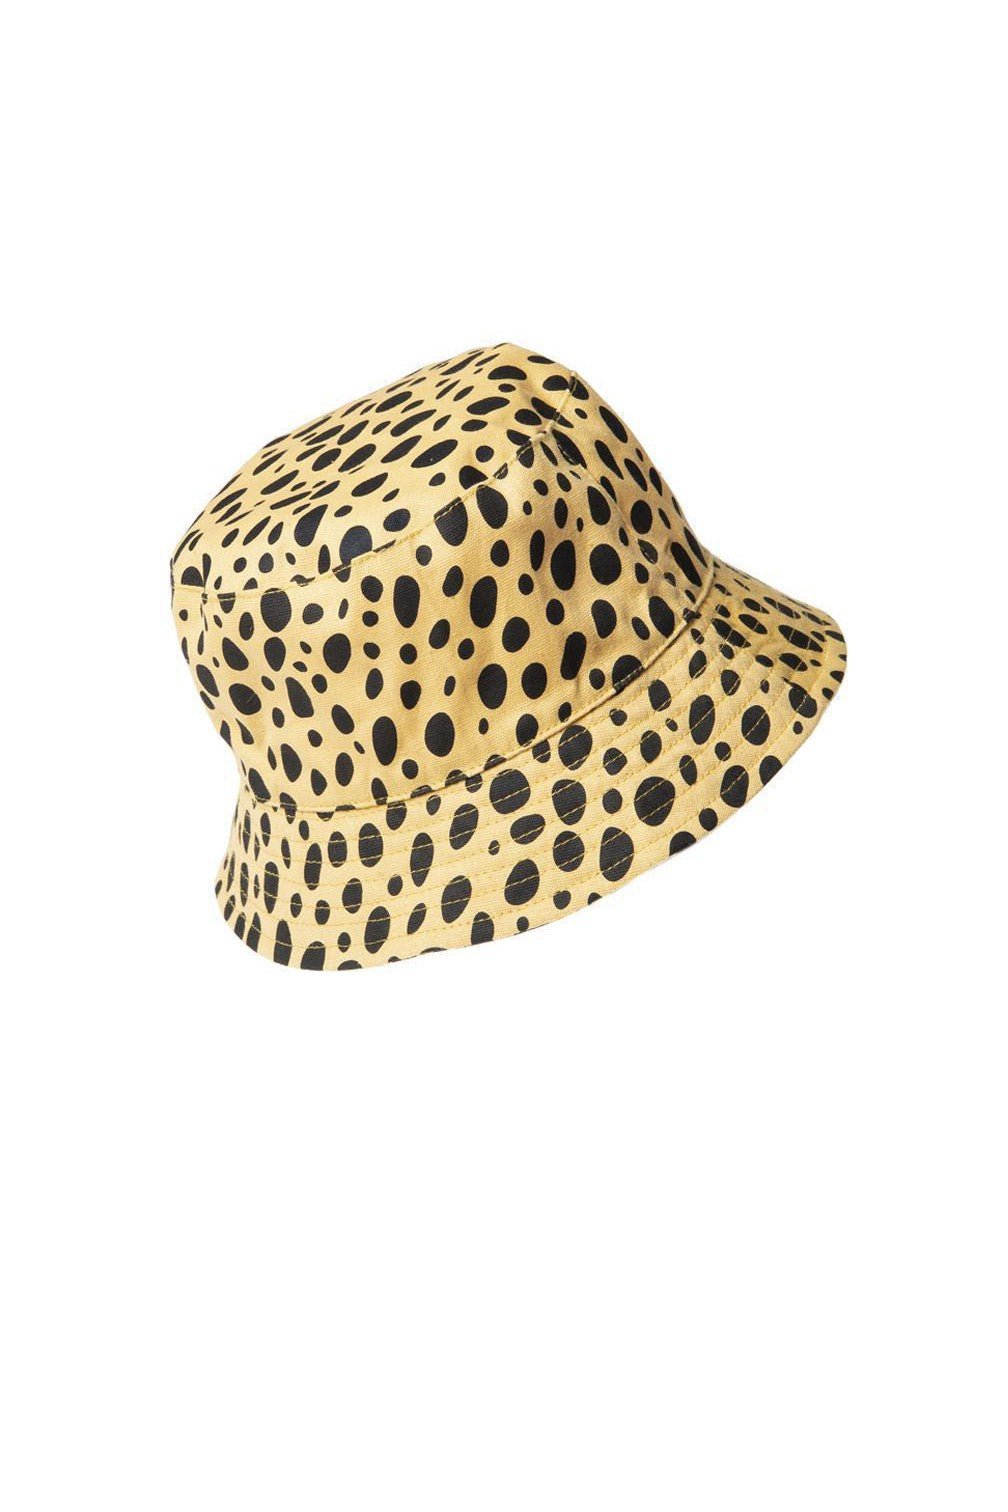 Cheetah Bucket Hat fit 3-6y or 7-10y - Mack & Harvie